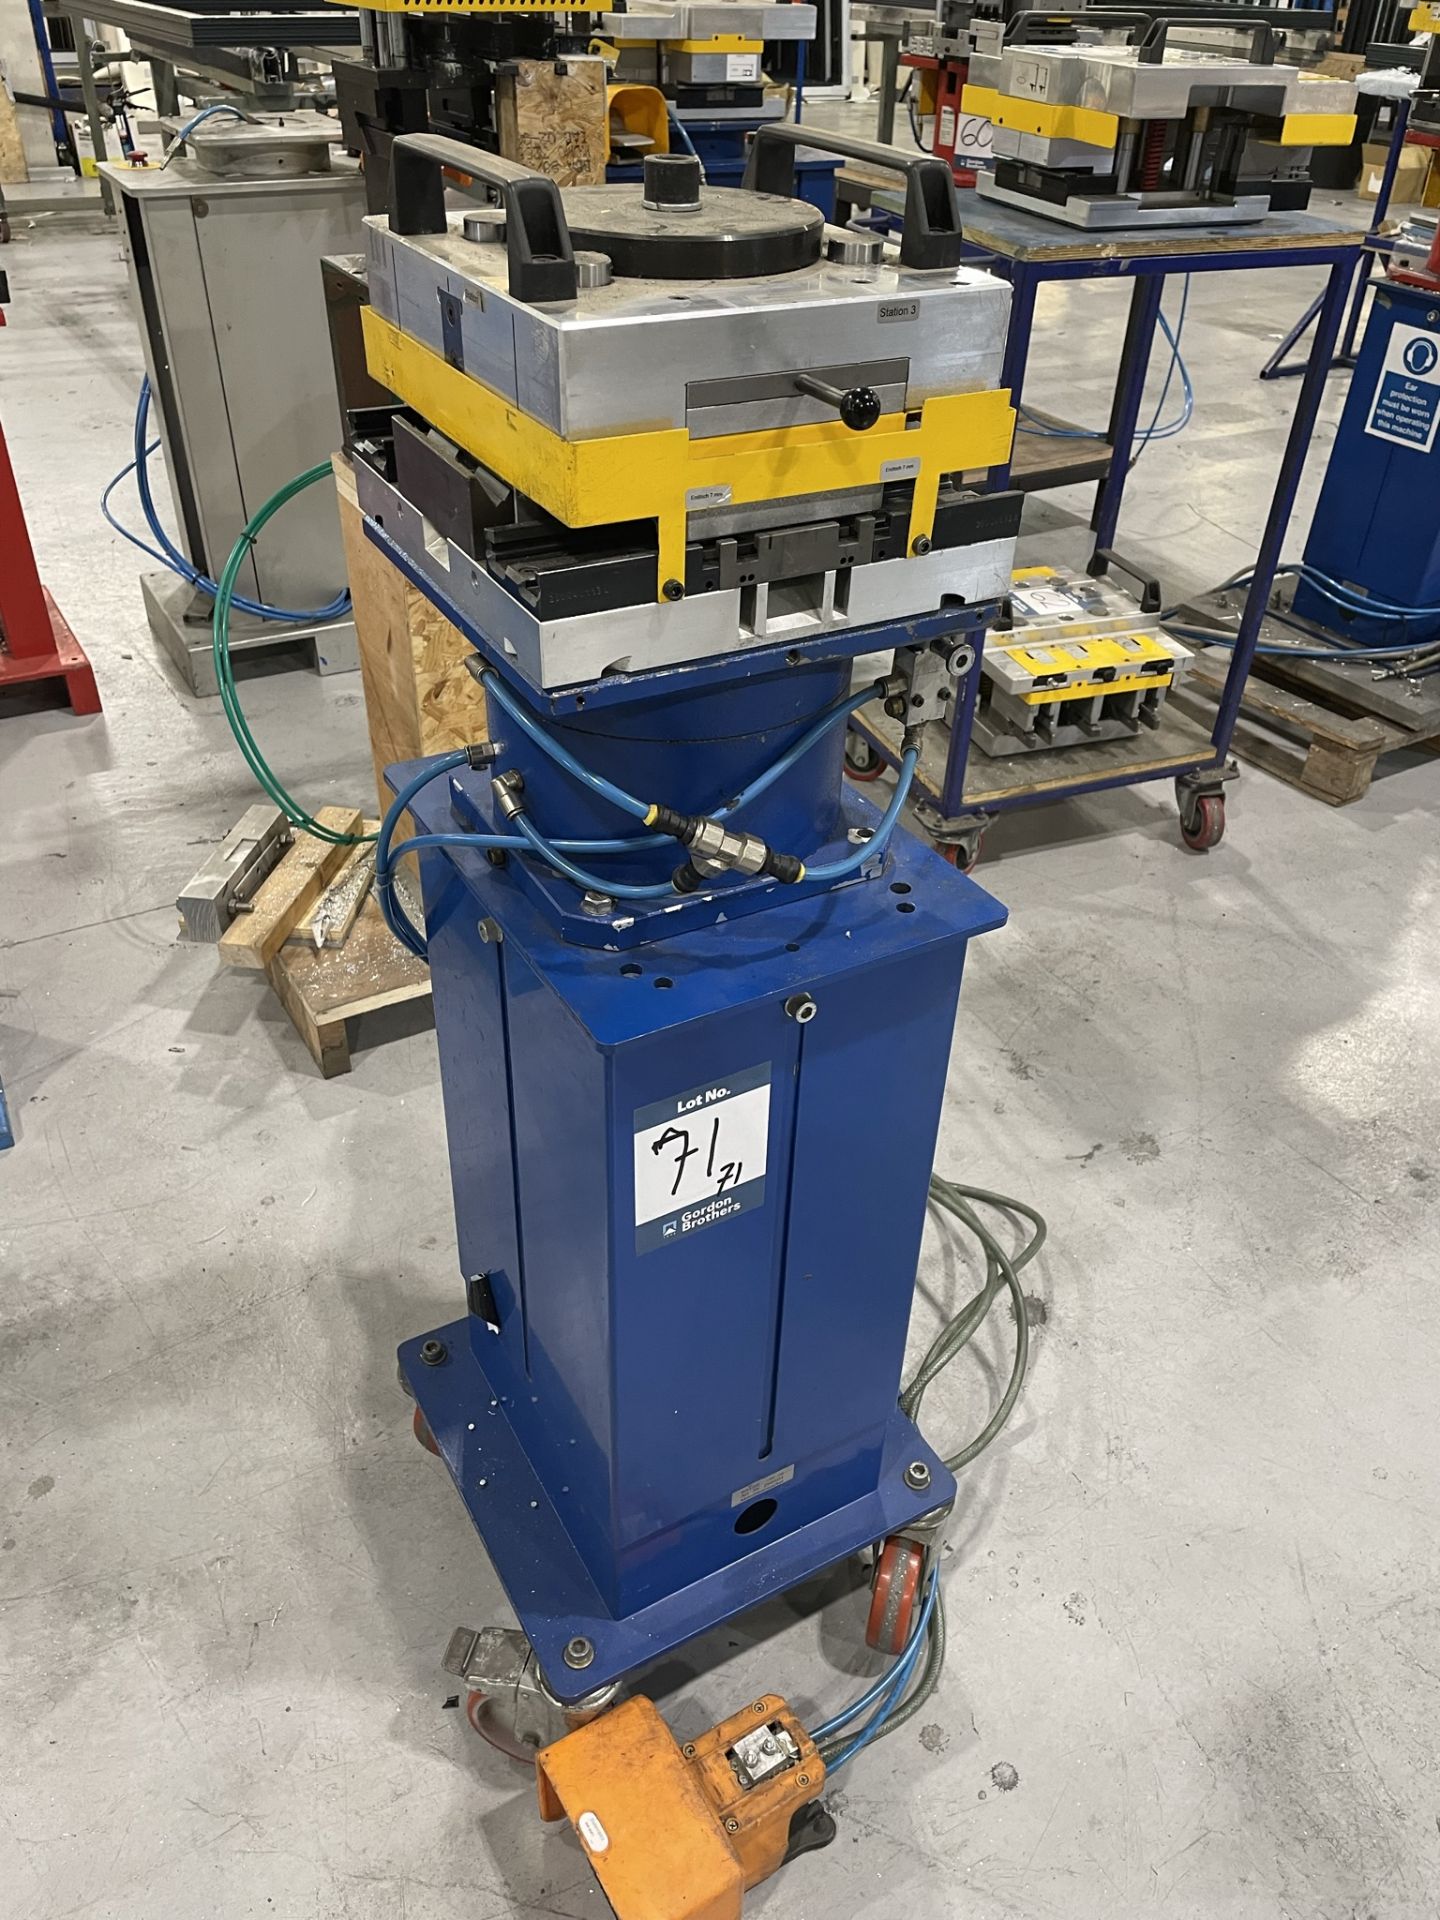 Schuco, 1382-799 pneumatic press, Serial No. 299504 and four station press tool